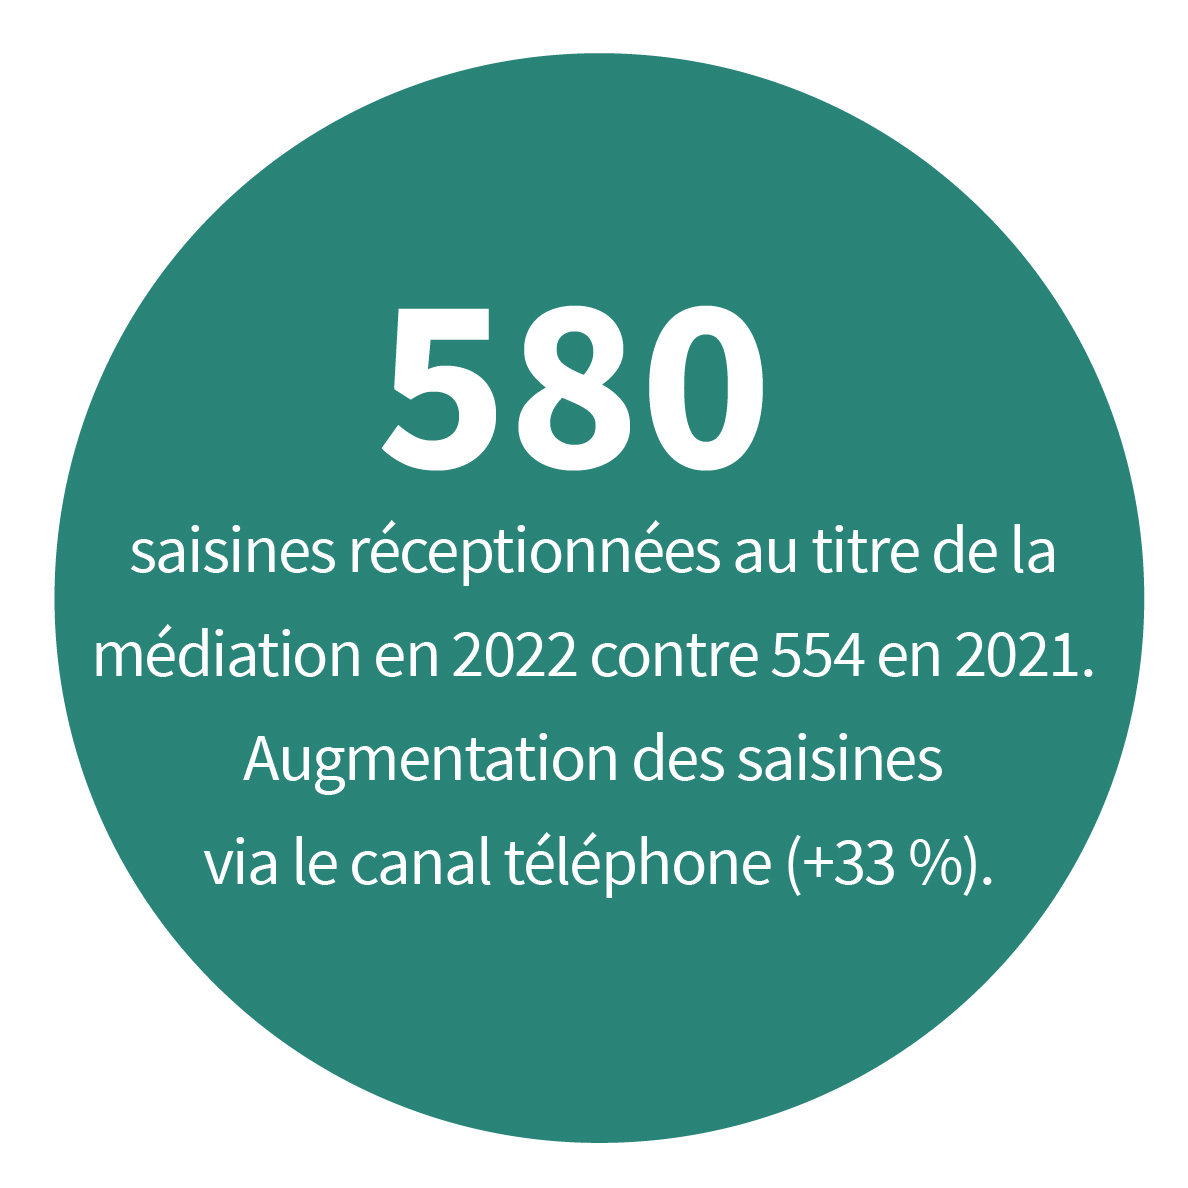 580 saisines réceptionnées au titre de la médiation en 2022 contre 554 en 2021. Augmentation des saisines via le canal téléphone (+ 33 %).